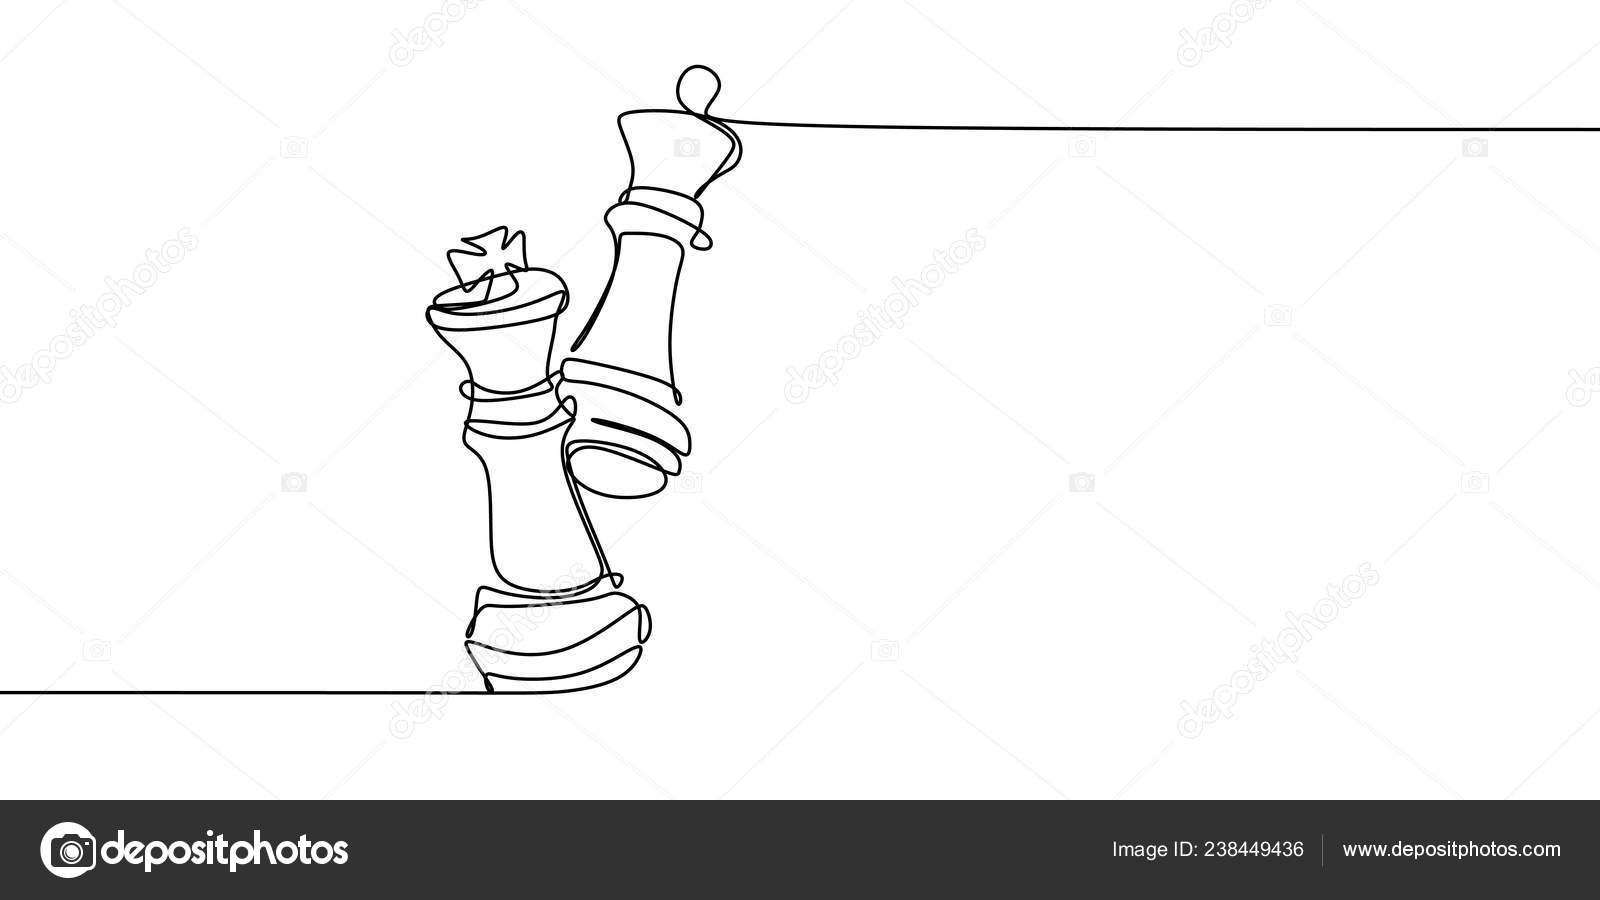 Desenho de arte de linha única de bispo de xadrez, ilustração vetorial